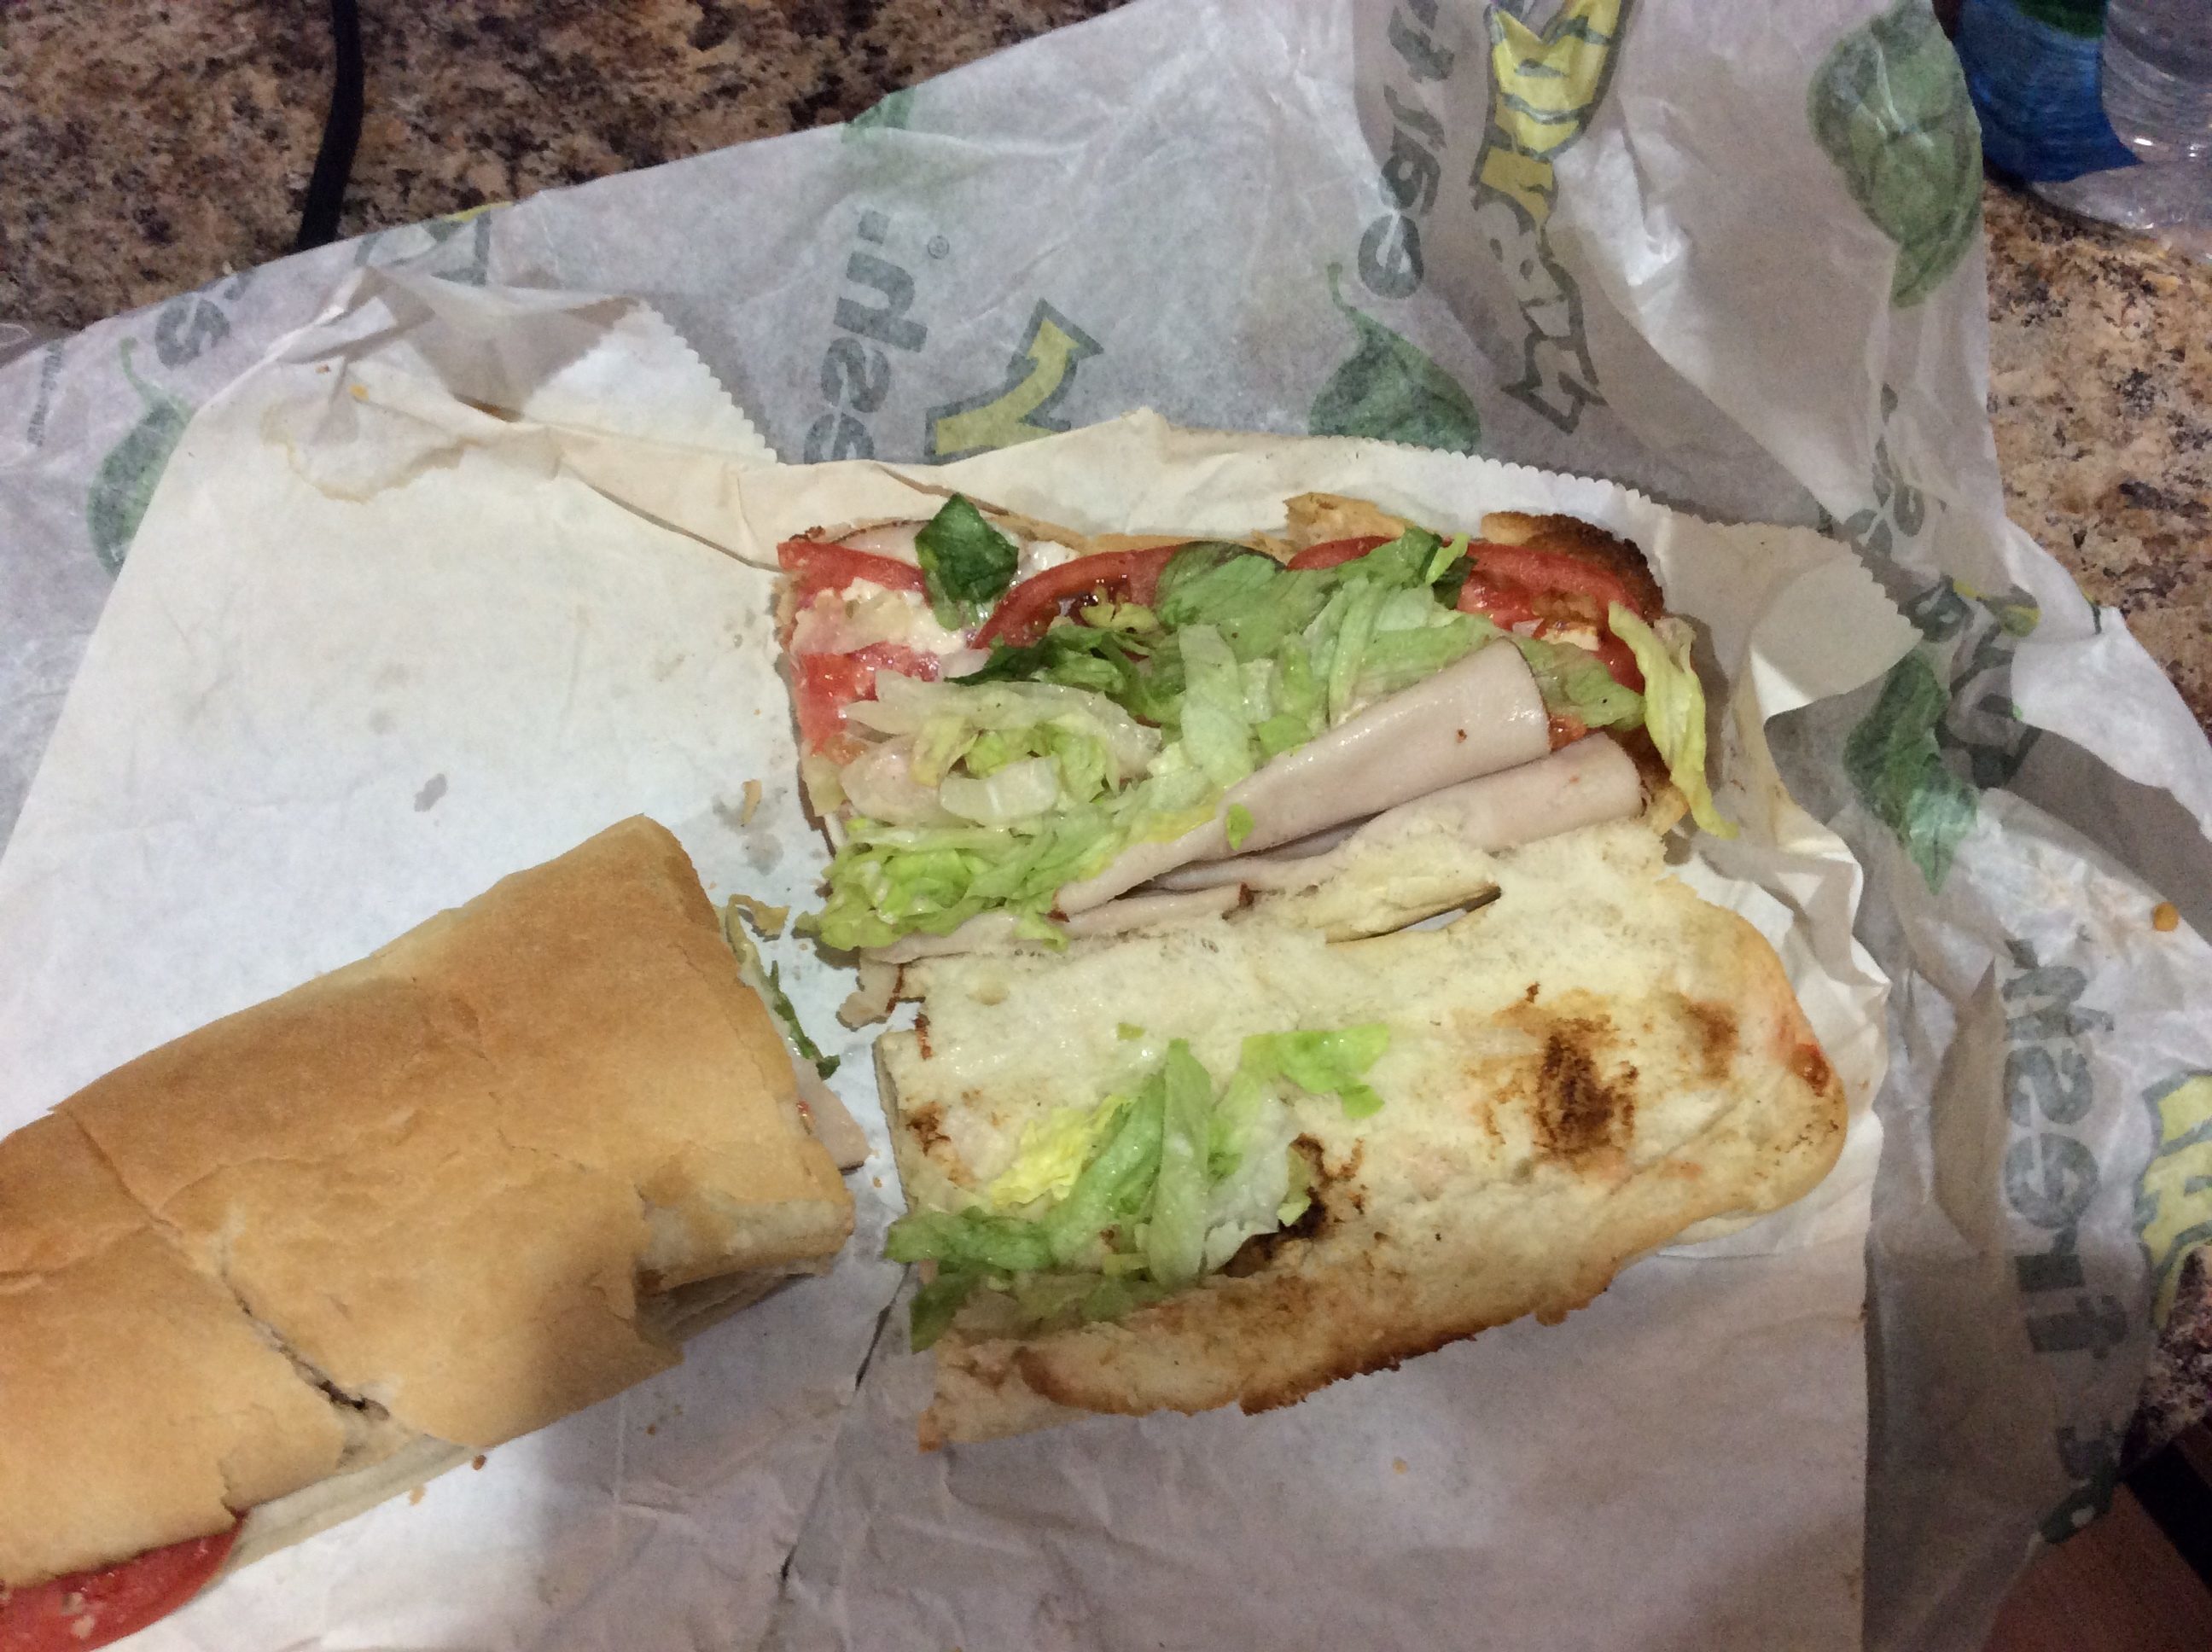 Gross subway sandwich